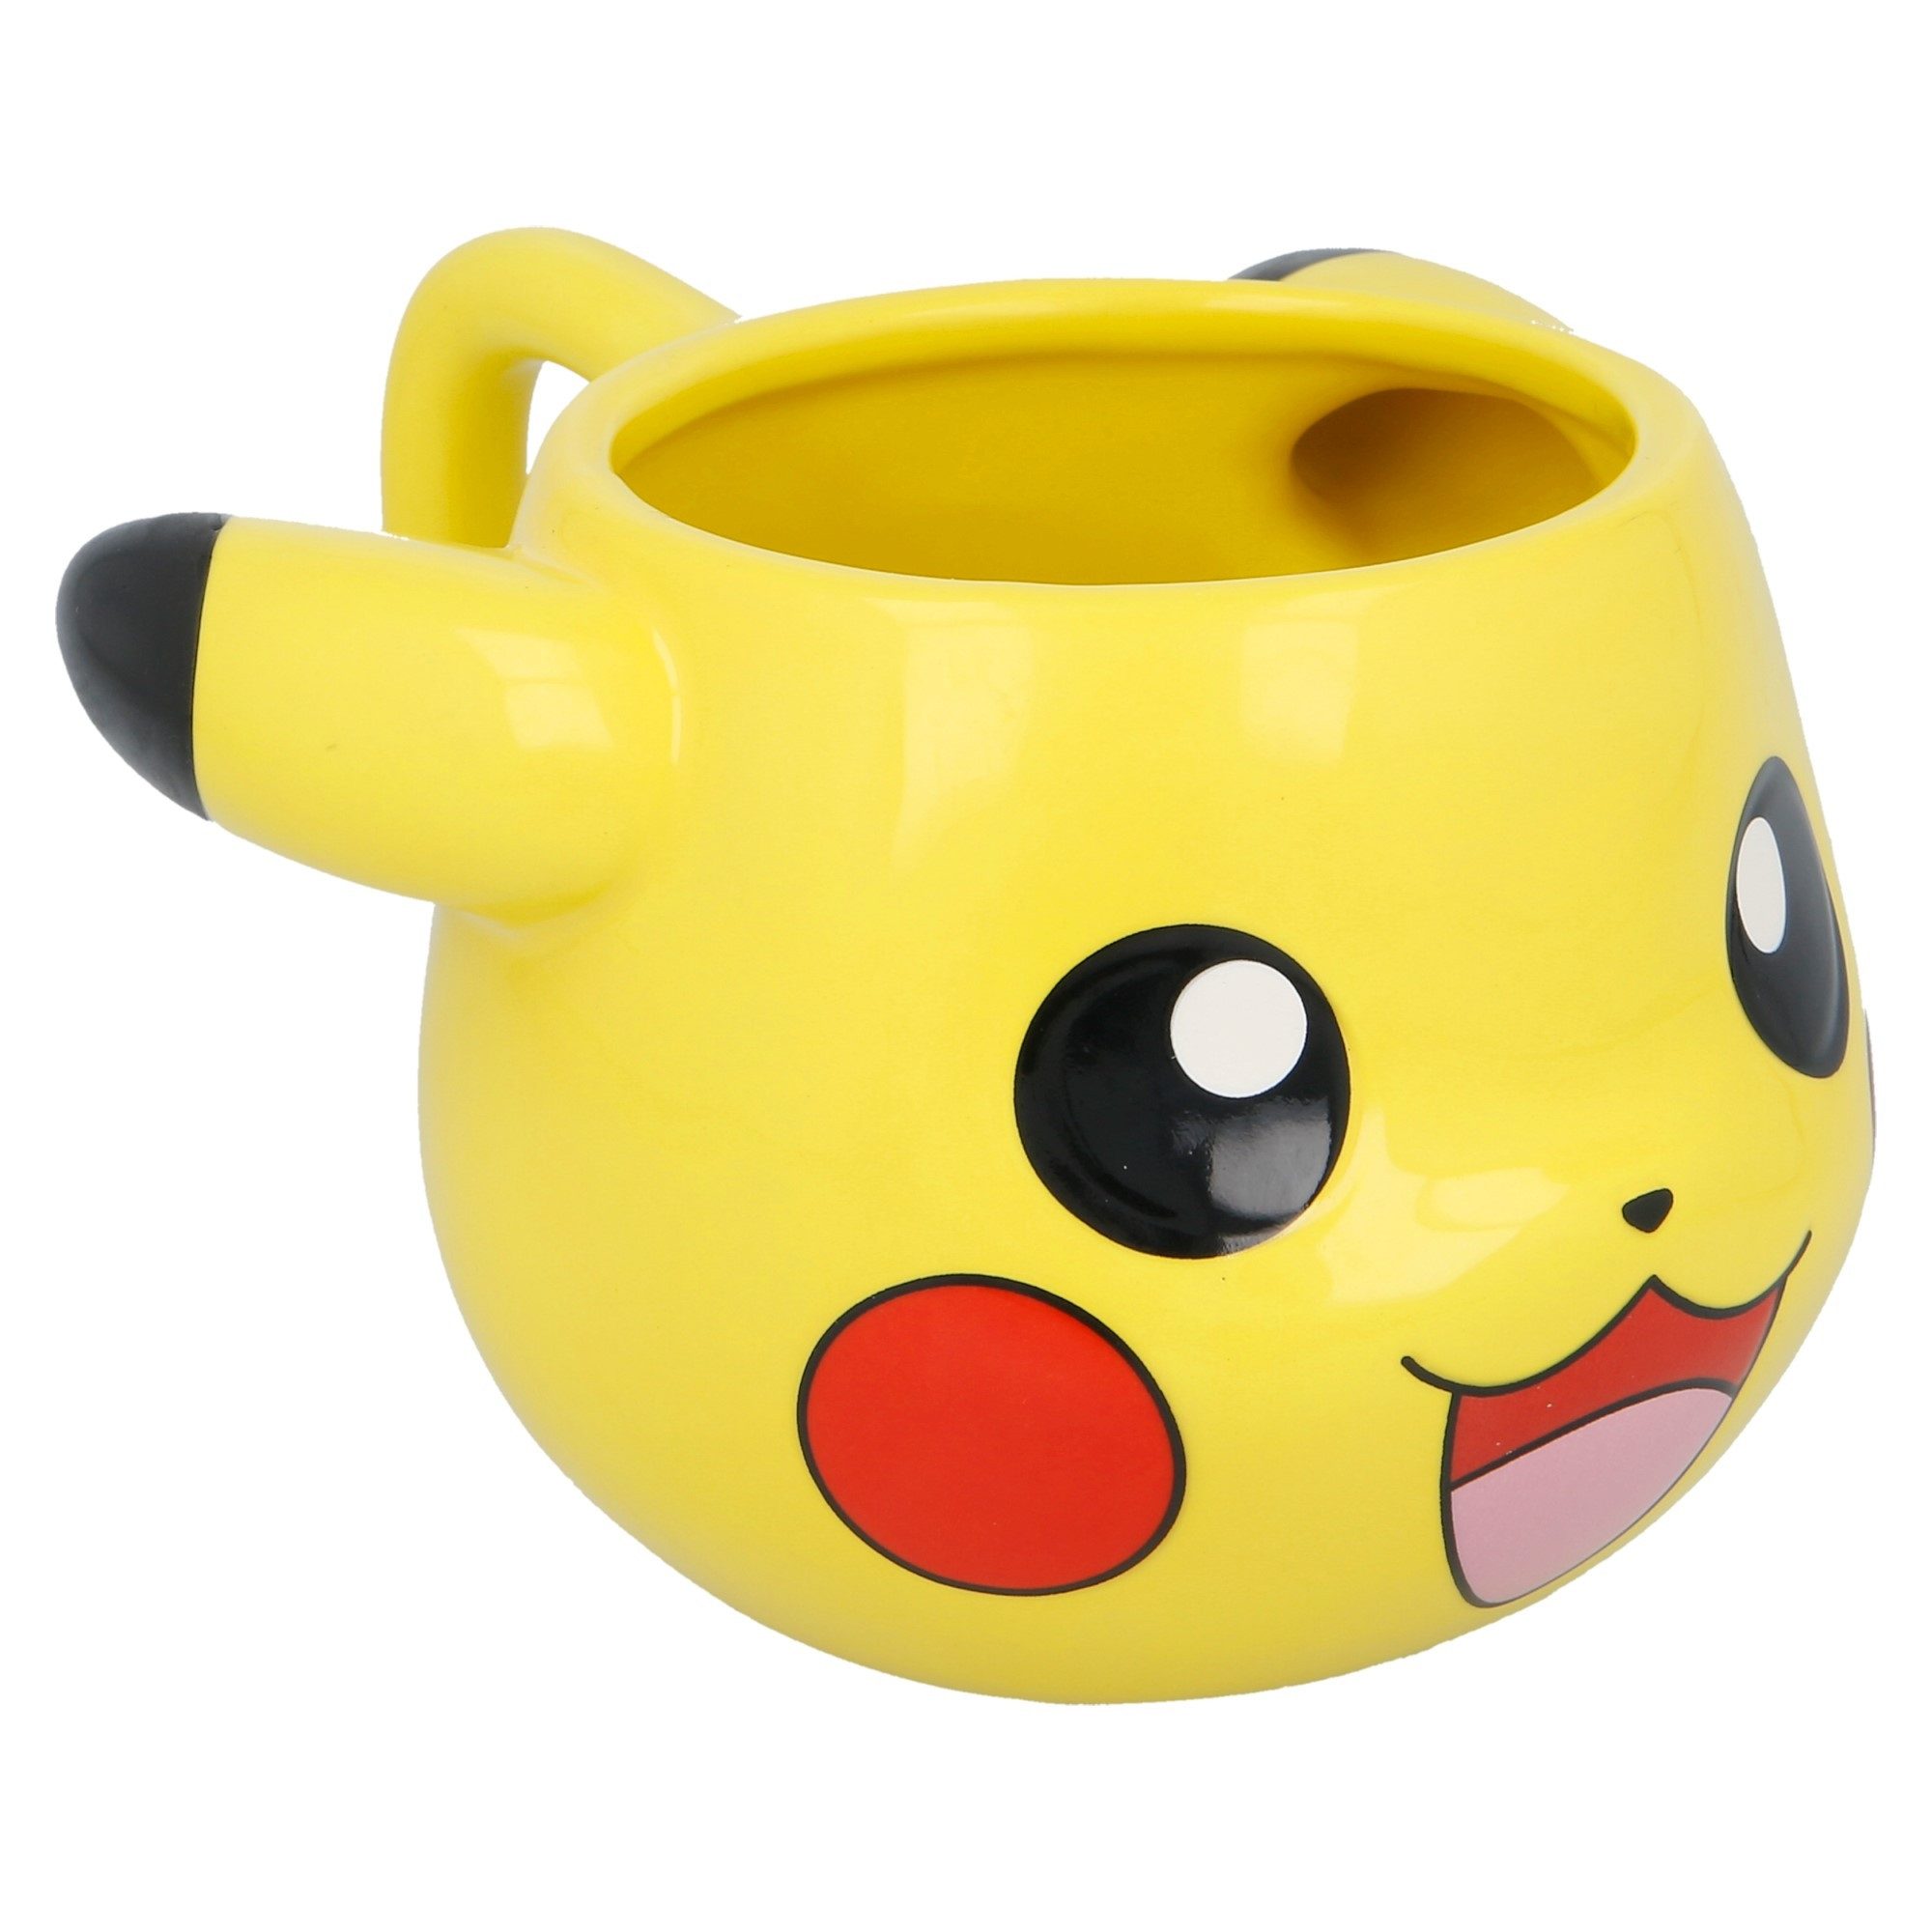 Stor Tasse Stor - Pokemon 3D Tasse aus Keramik 500ml - Pikachu Motiv